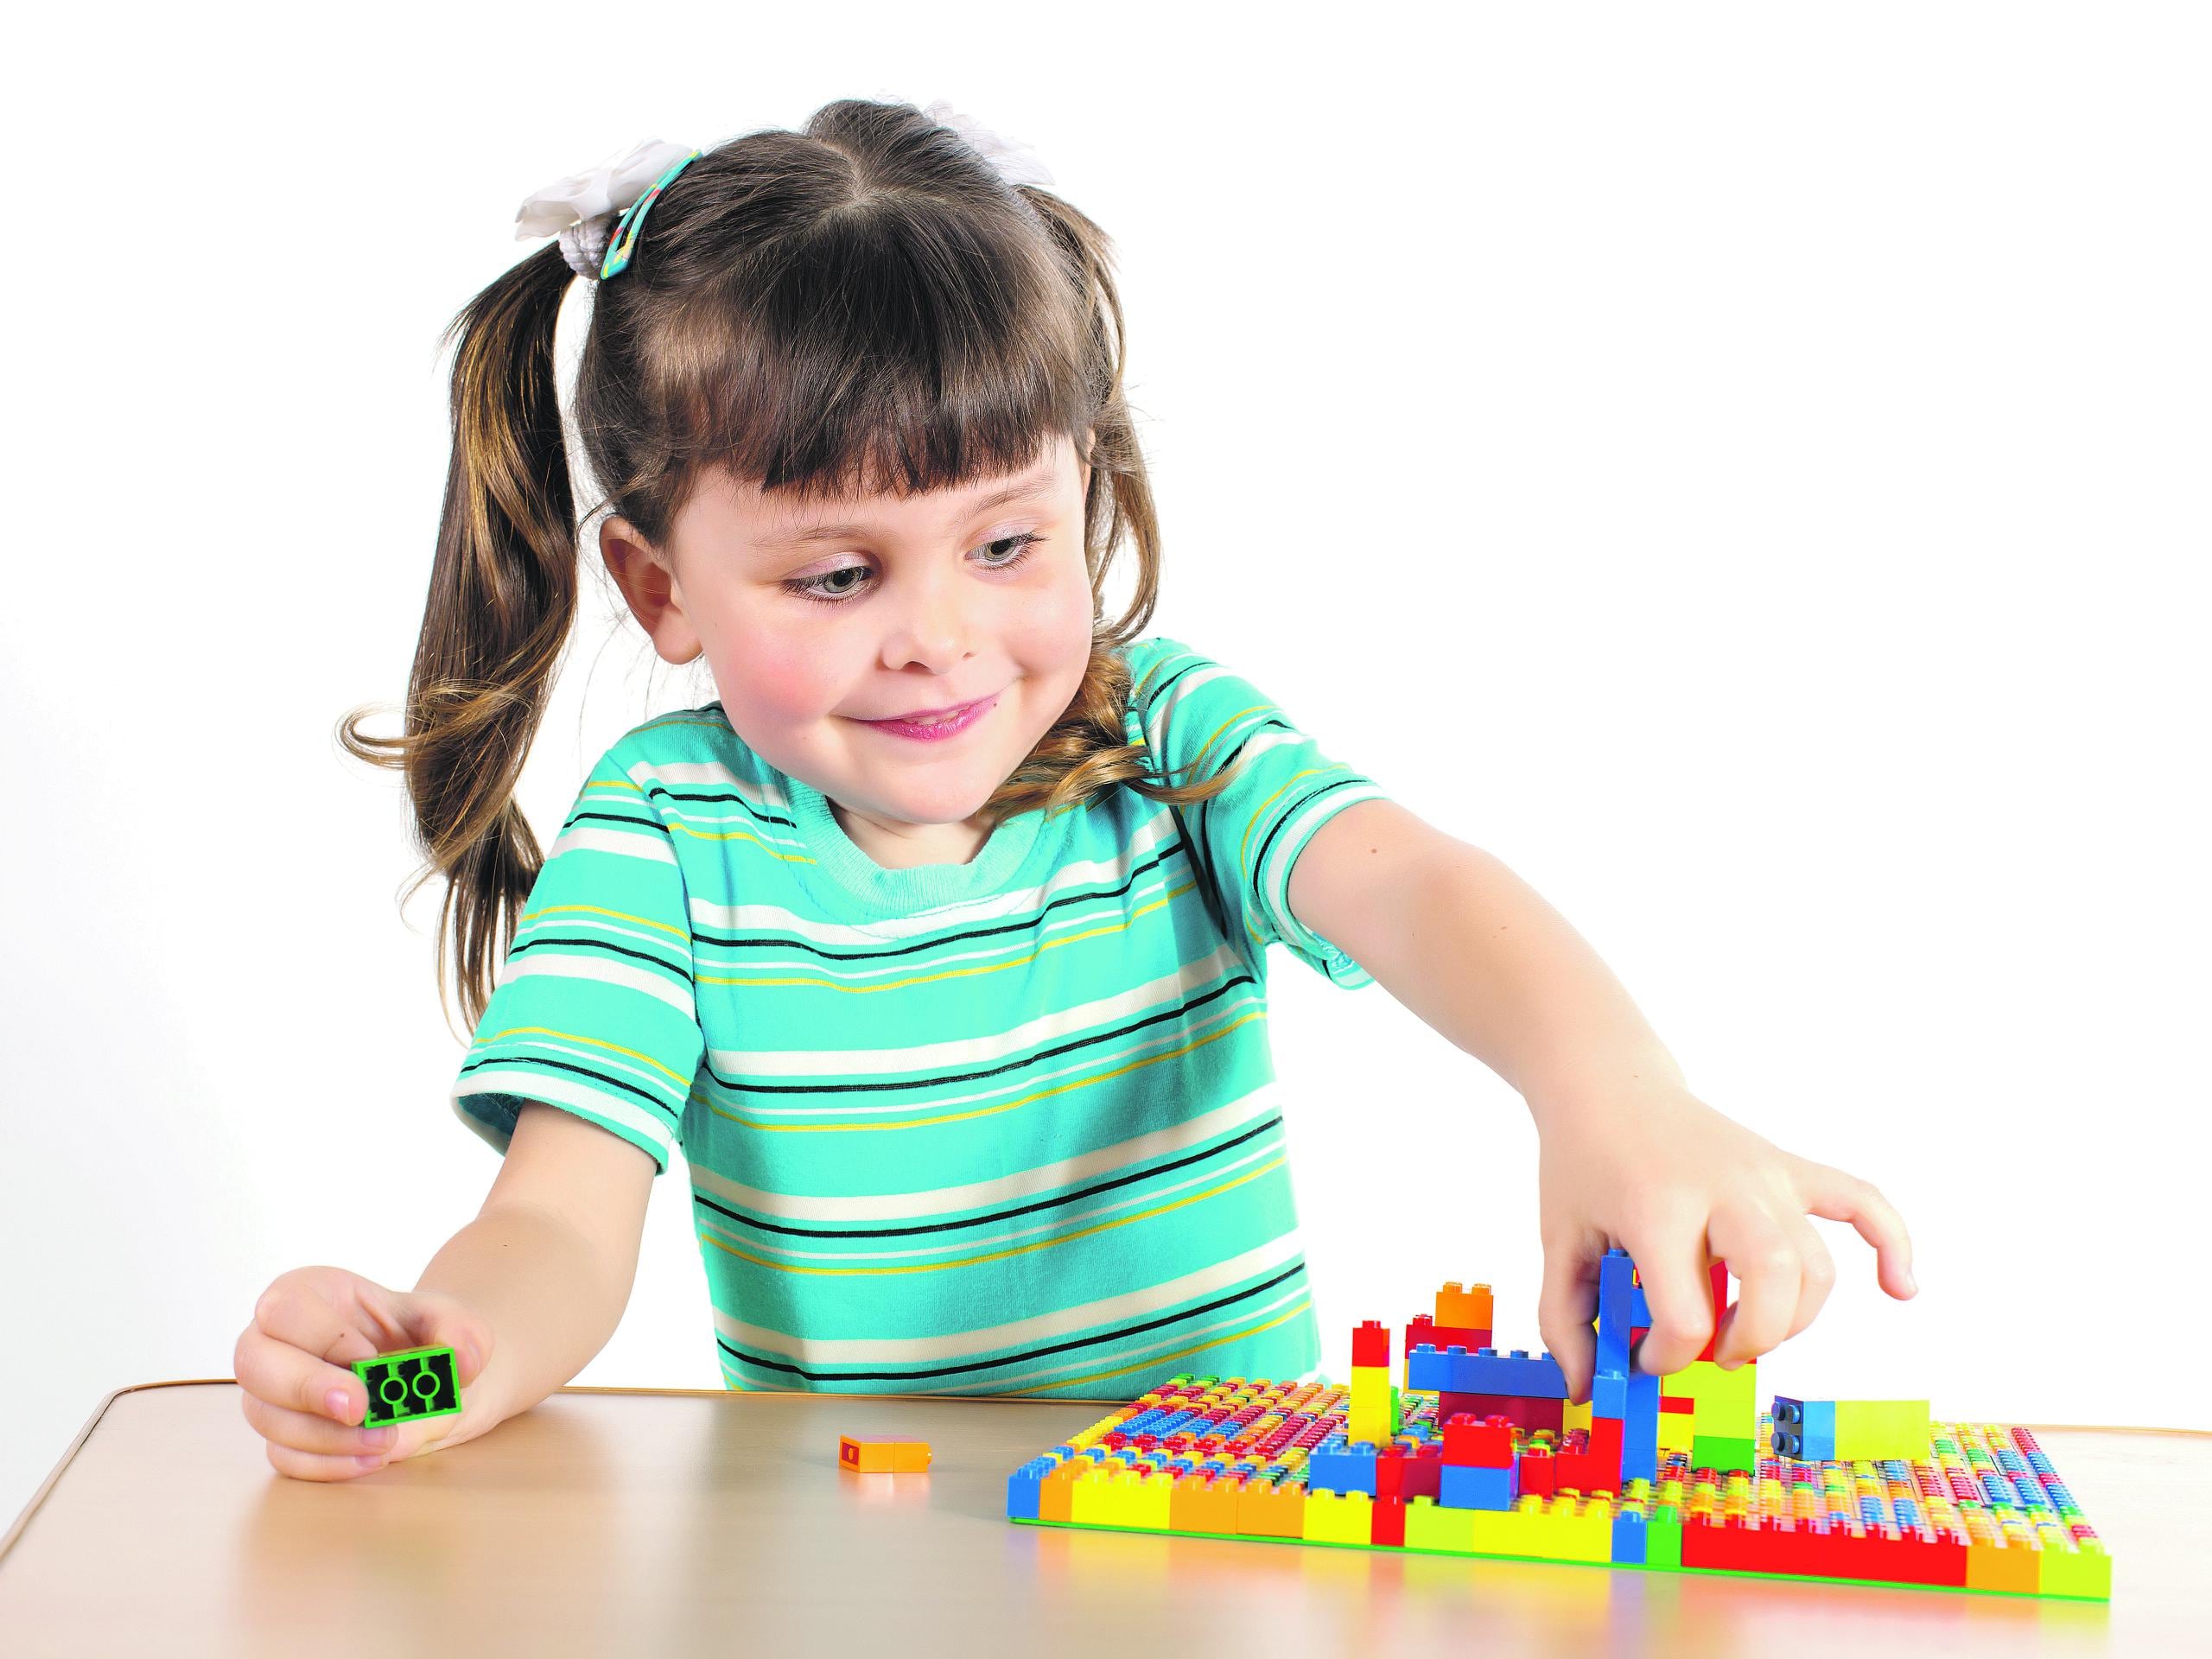 Los bloques o Legos ayudan al desarrollo motor fino y la escritura.